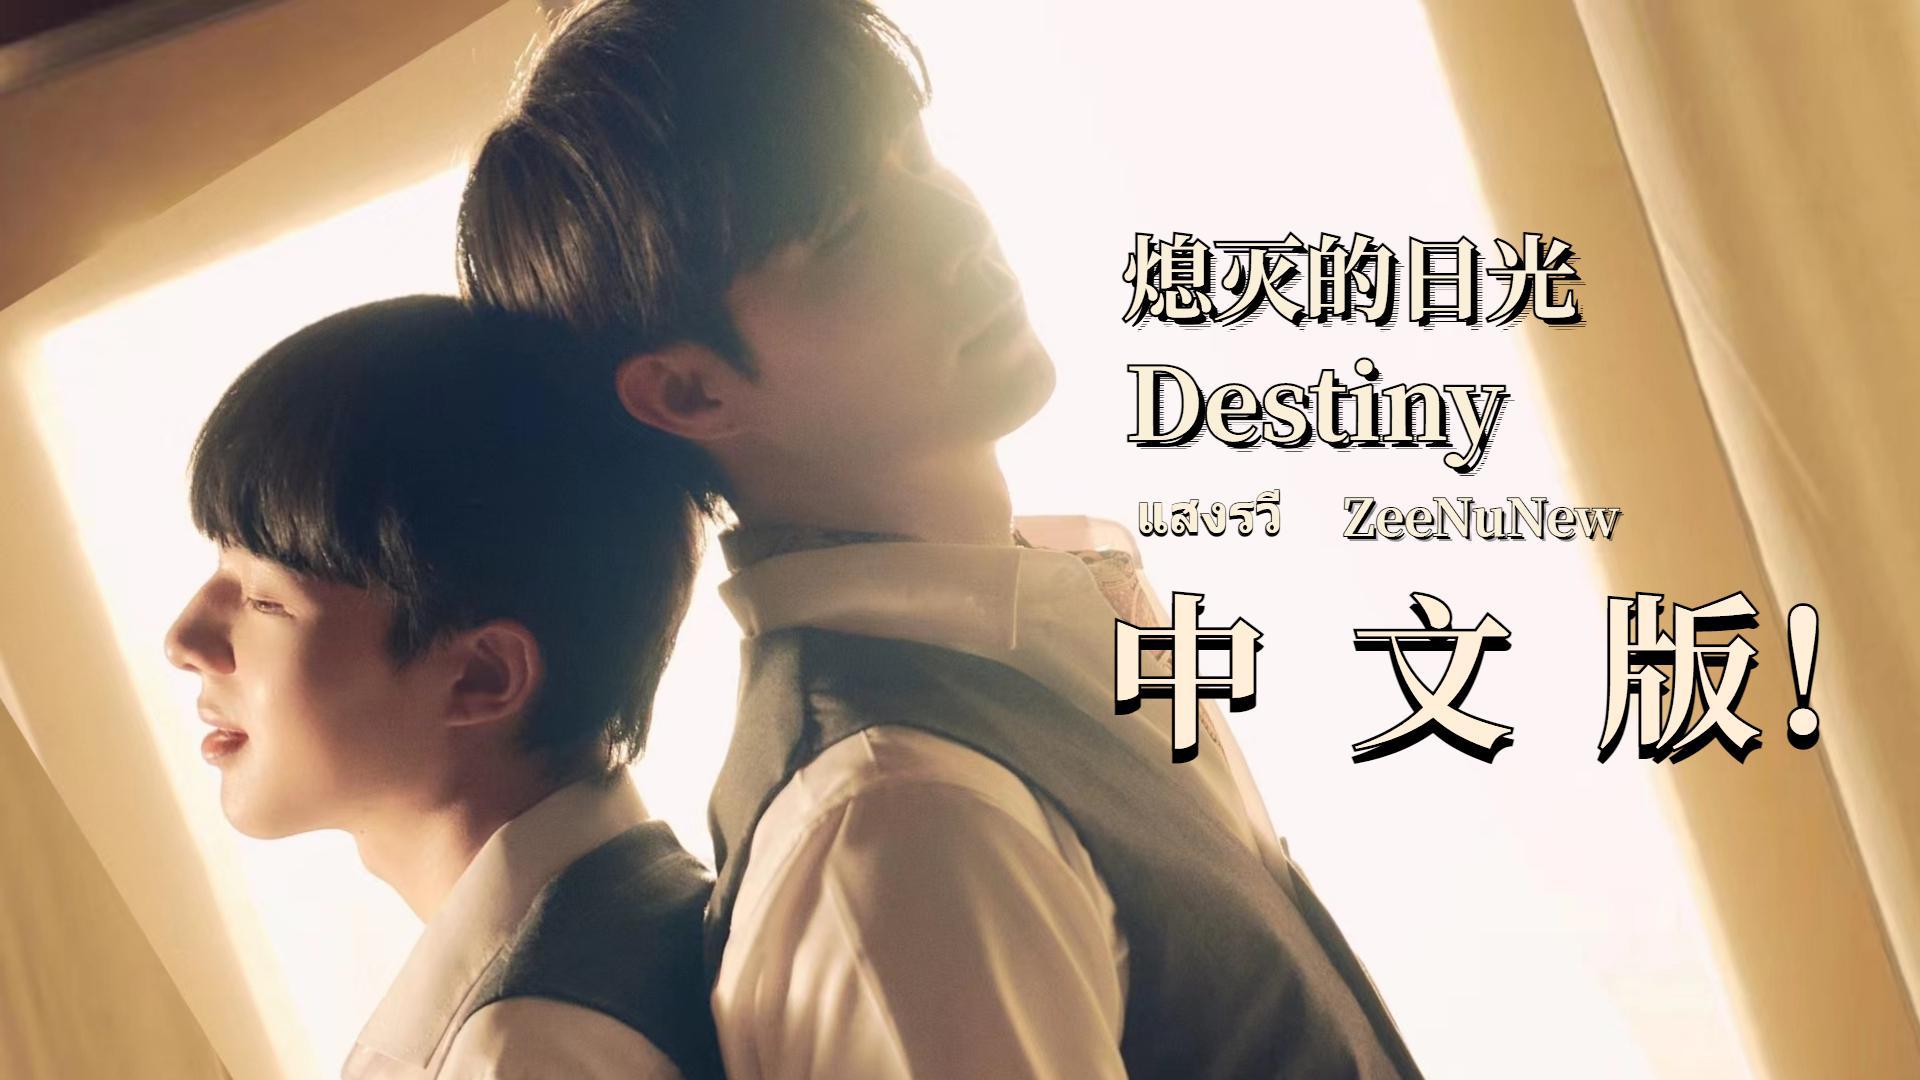 星_Byeol - 《熄灭的日光》OST Destiny แสงรวี 中文填词翻唱